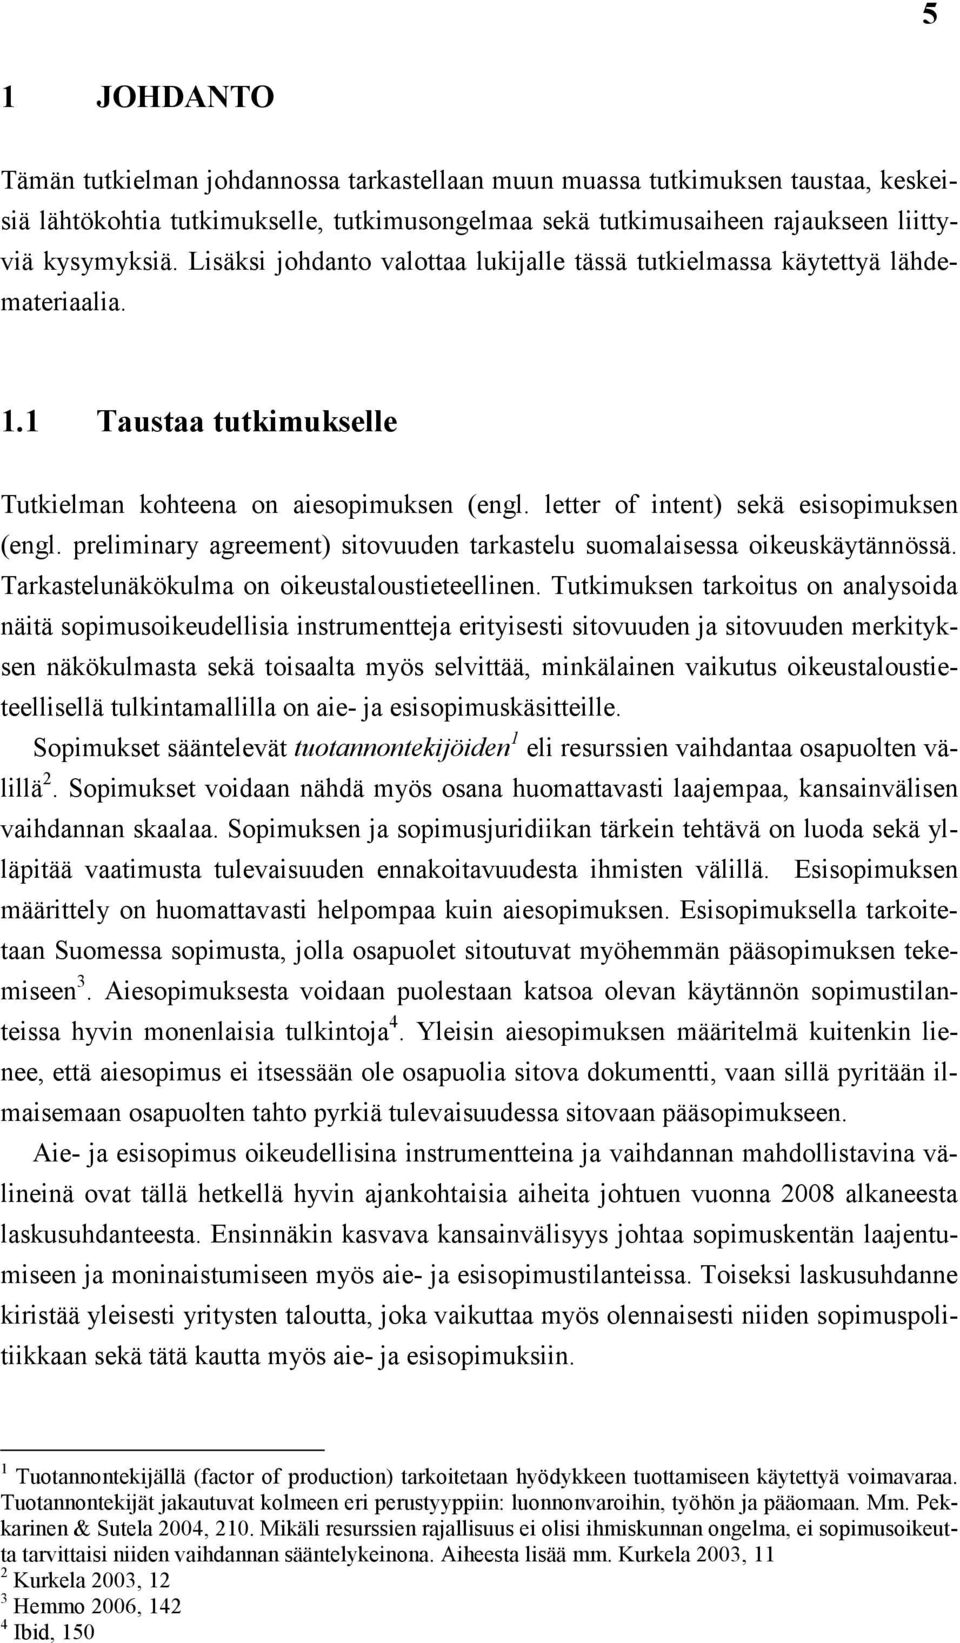 preliminary agreement) sitovuuden tarkastelu suomalaisessa oikeuskäytännössä. Tarkastelunäkökulma on oikeustaloustieteellinen.